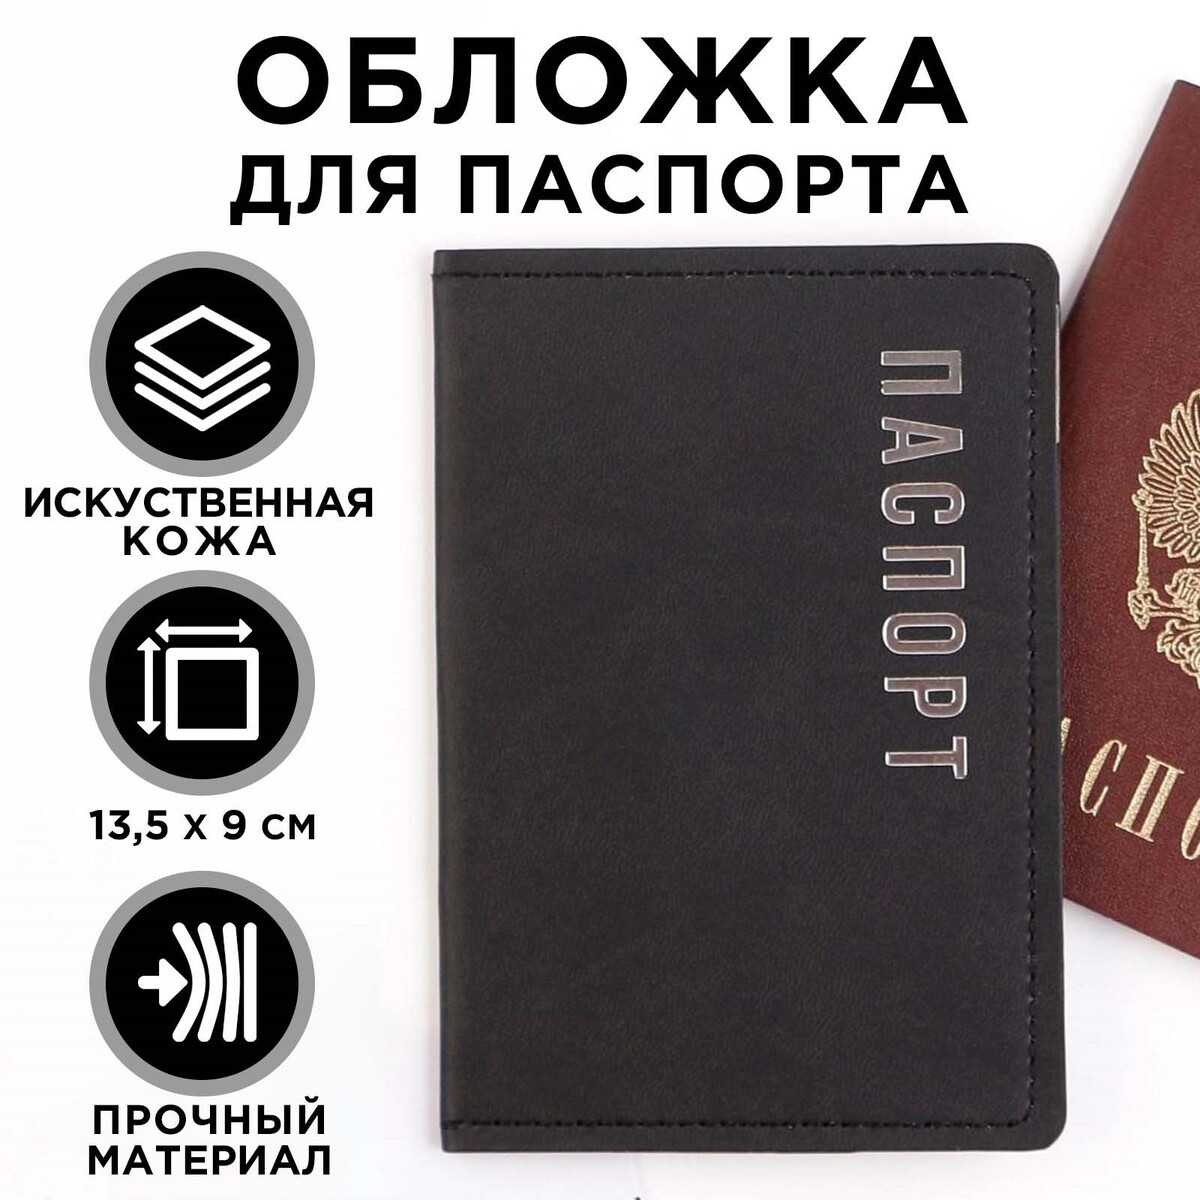 Обложка на паспорт Точки зеленые и синие | Высокое качество принта и ткани от BULLFINCH